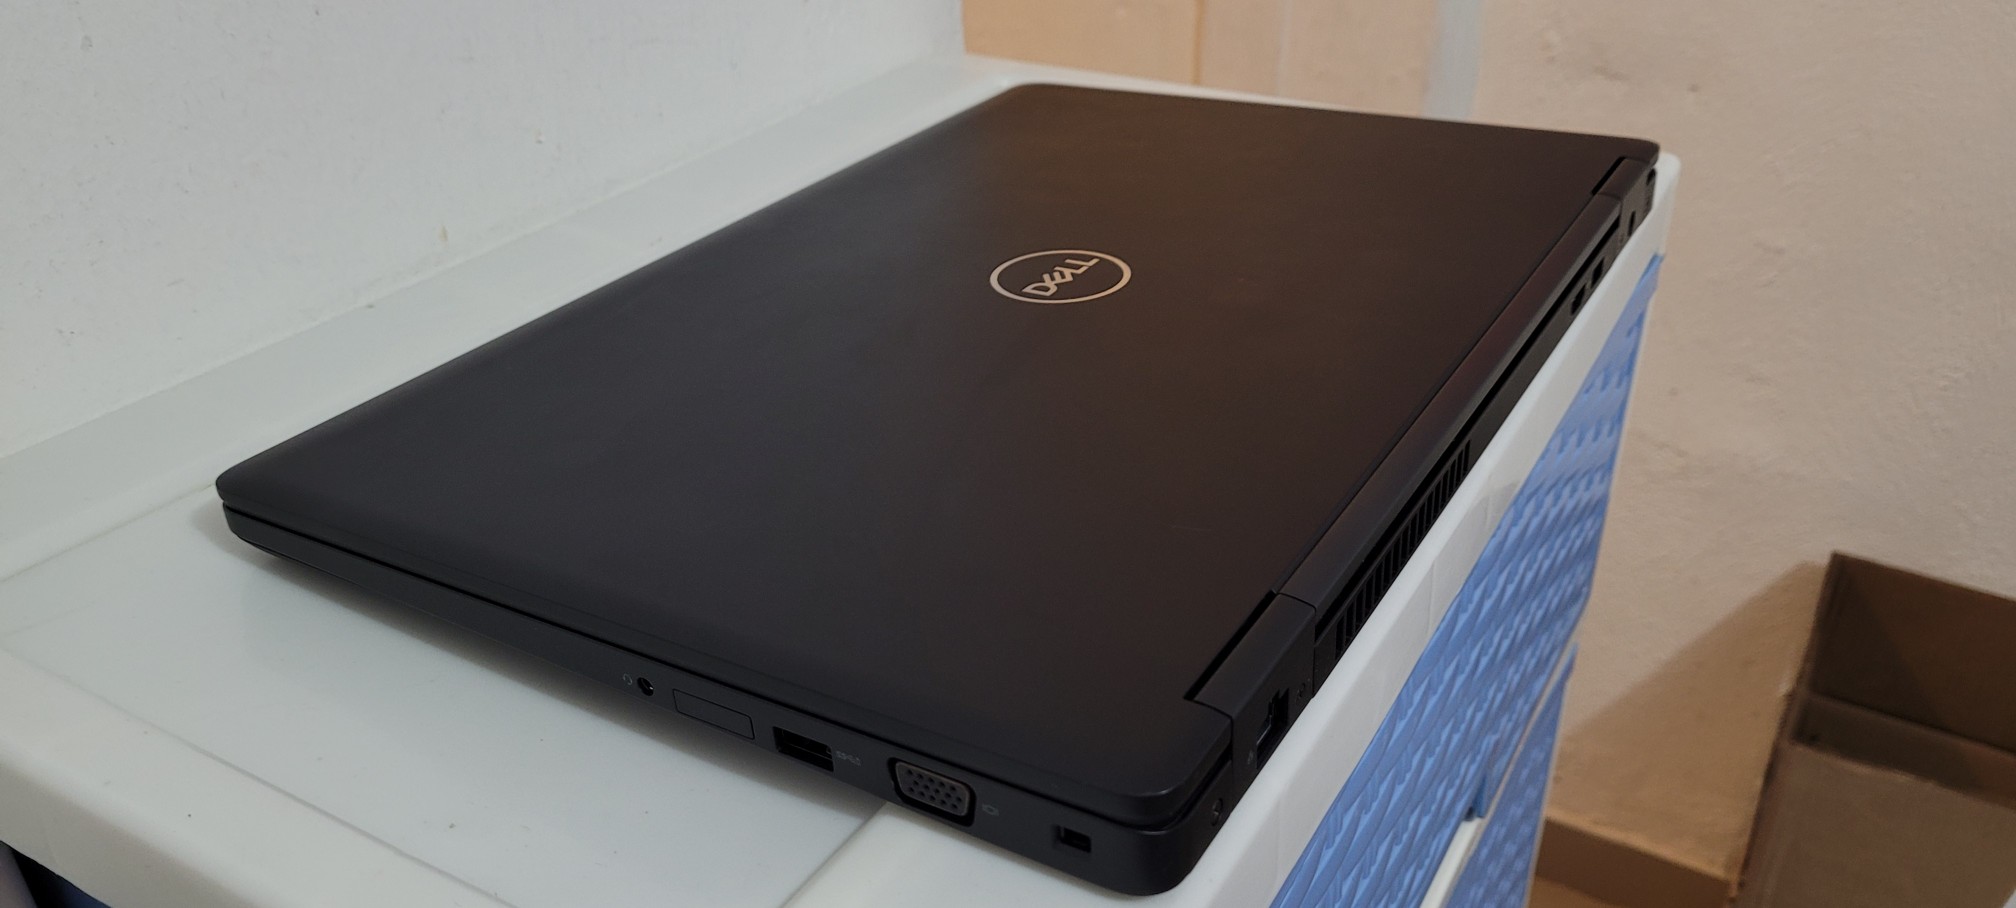 computadoras y laptops - Dell 5580 17 Pulg Core i7 7ma Gen Ram 8gb ddr4 Disco 128gb y 1TB Wifi 2